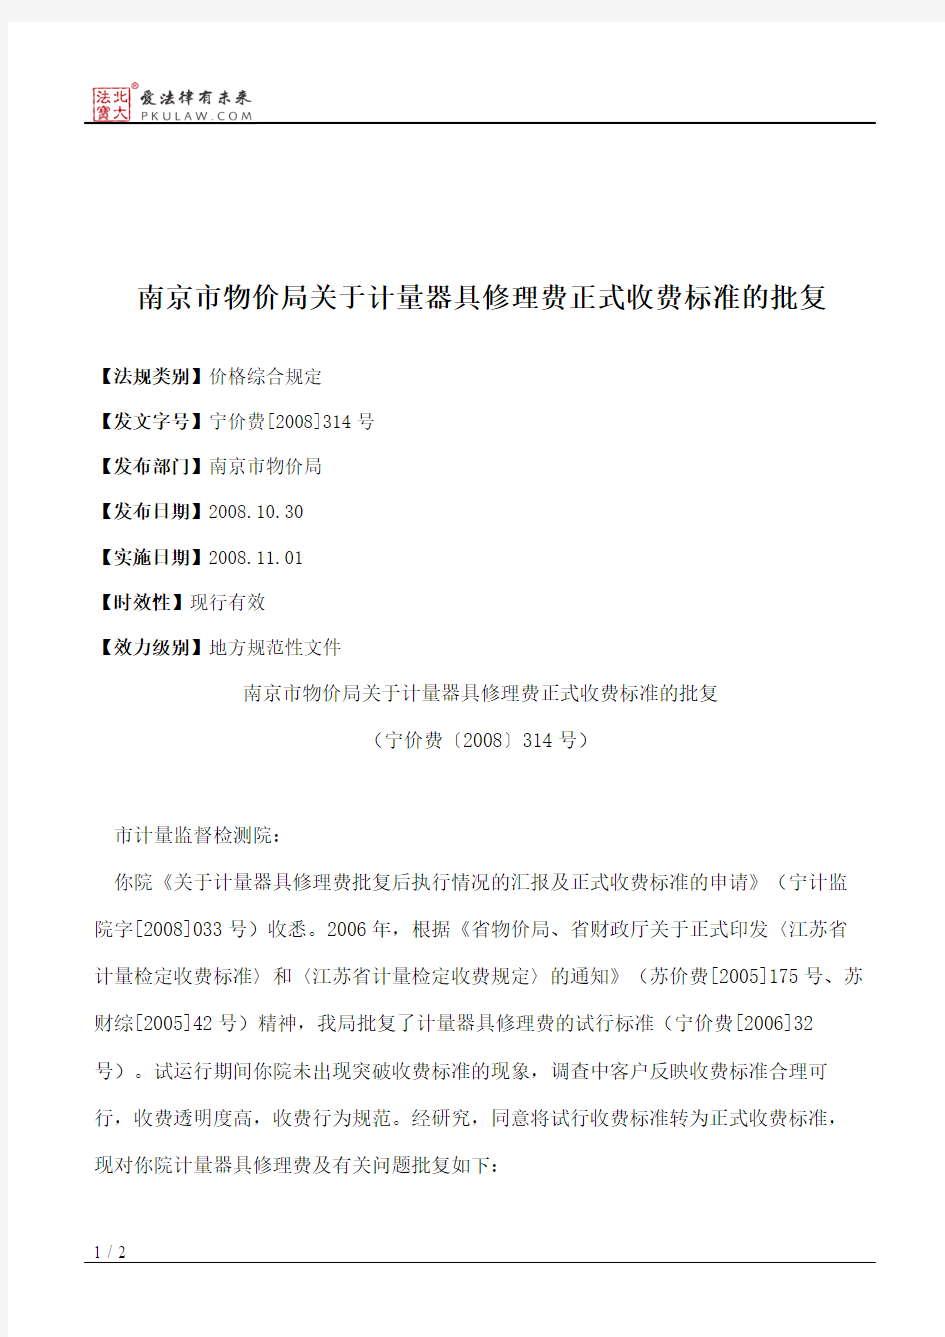 南京市物价局关于计量器具修理费正式收费标准的批复